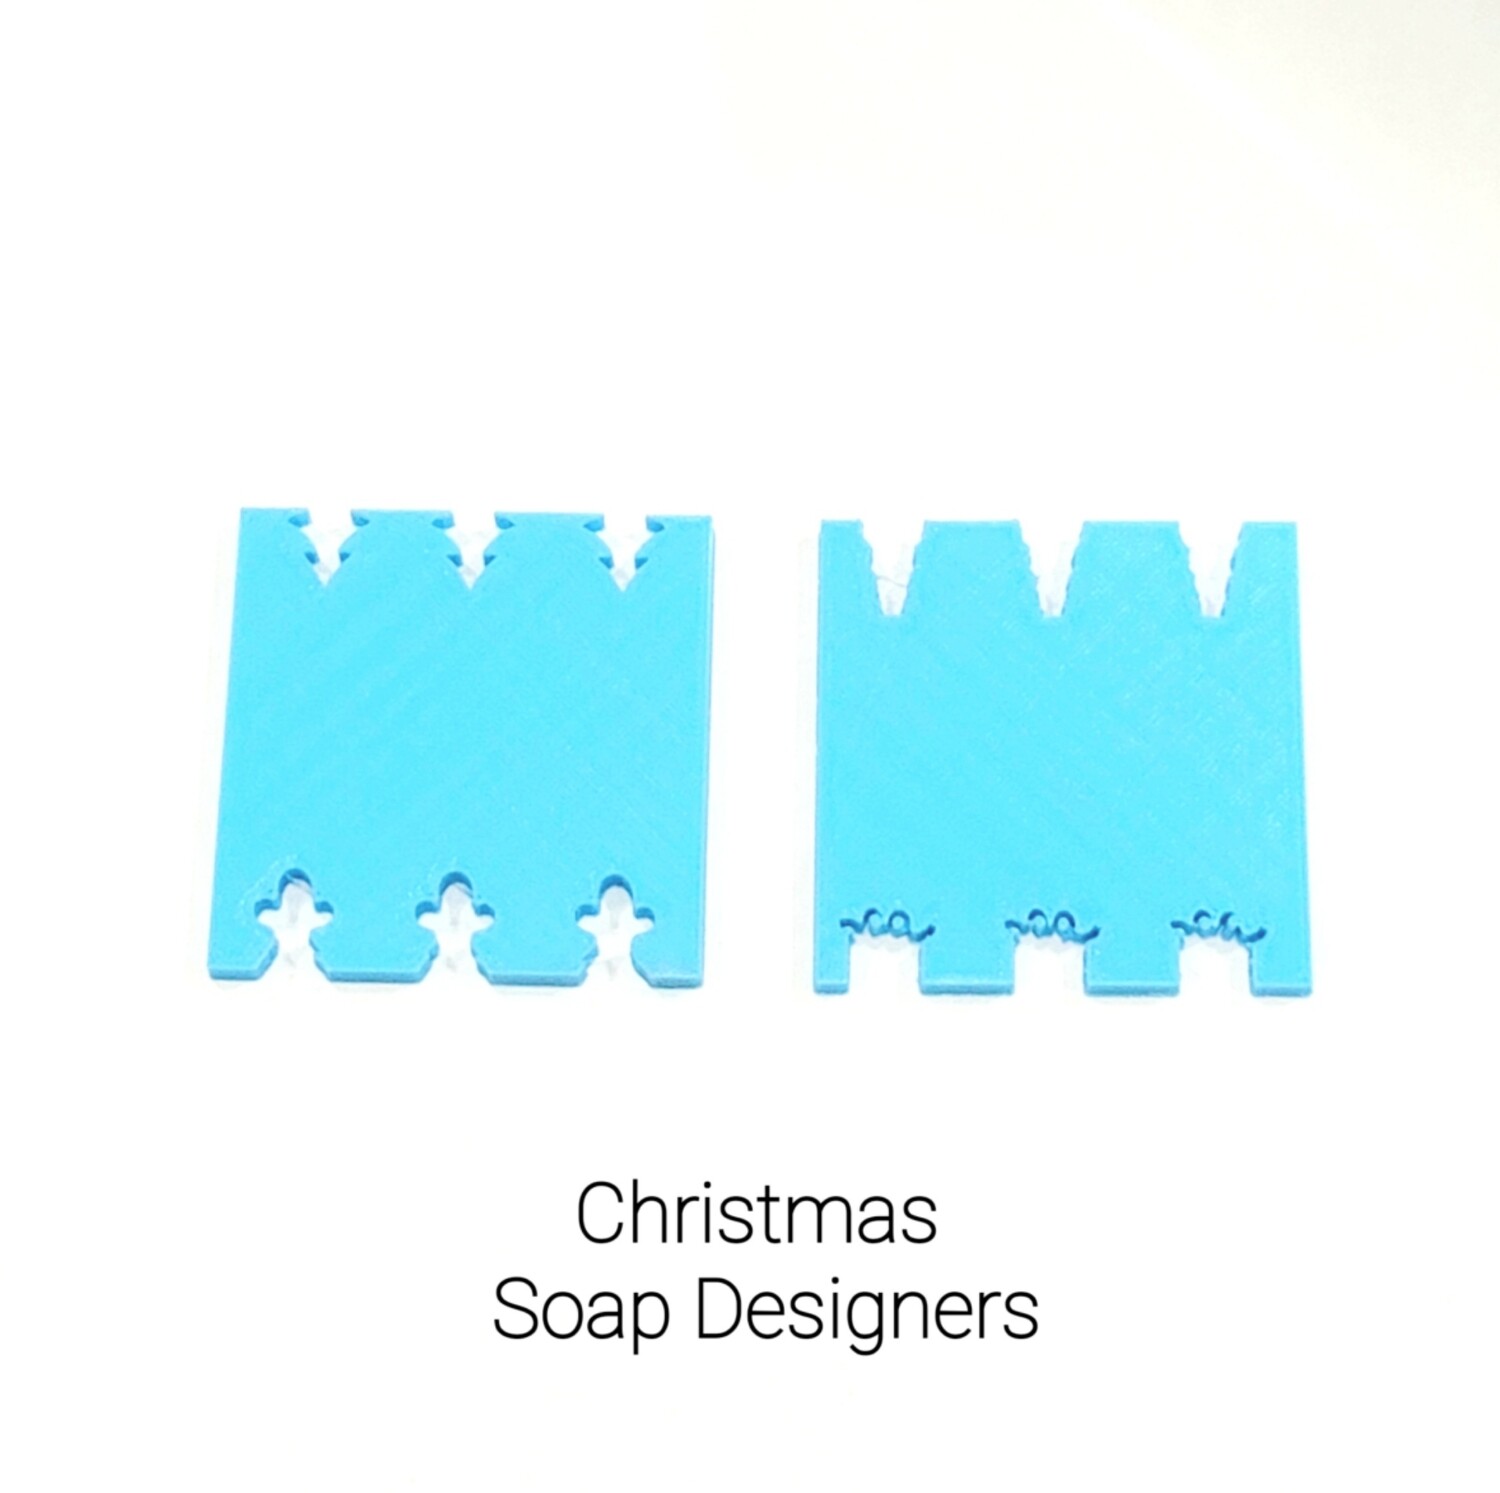 Soap Designers Christmas